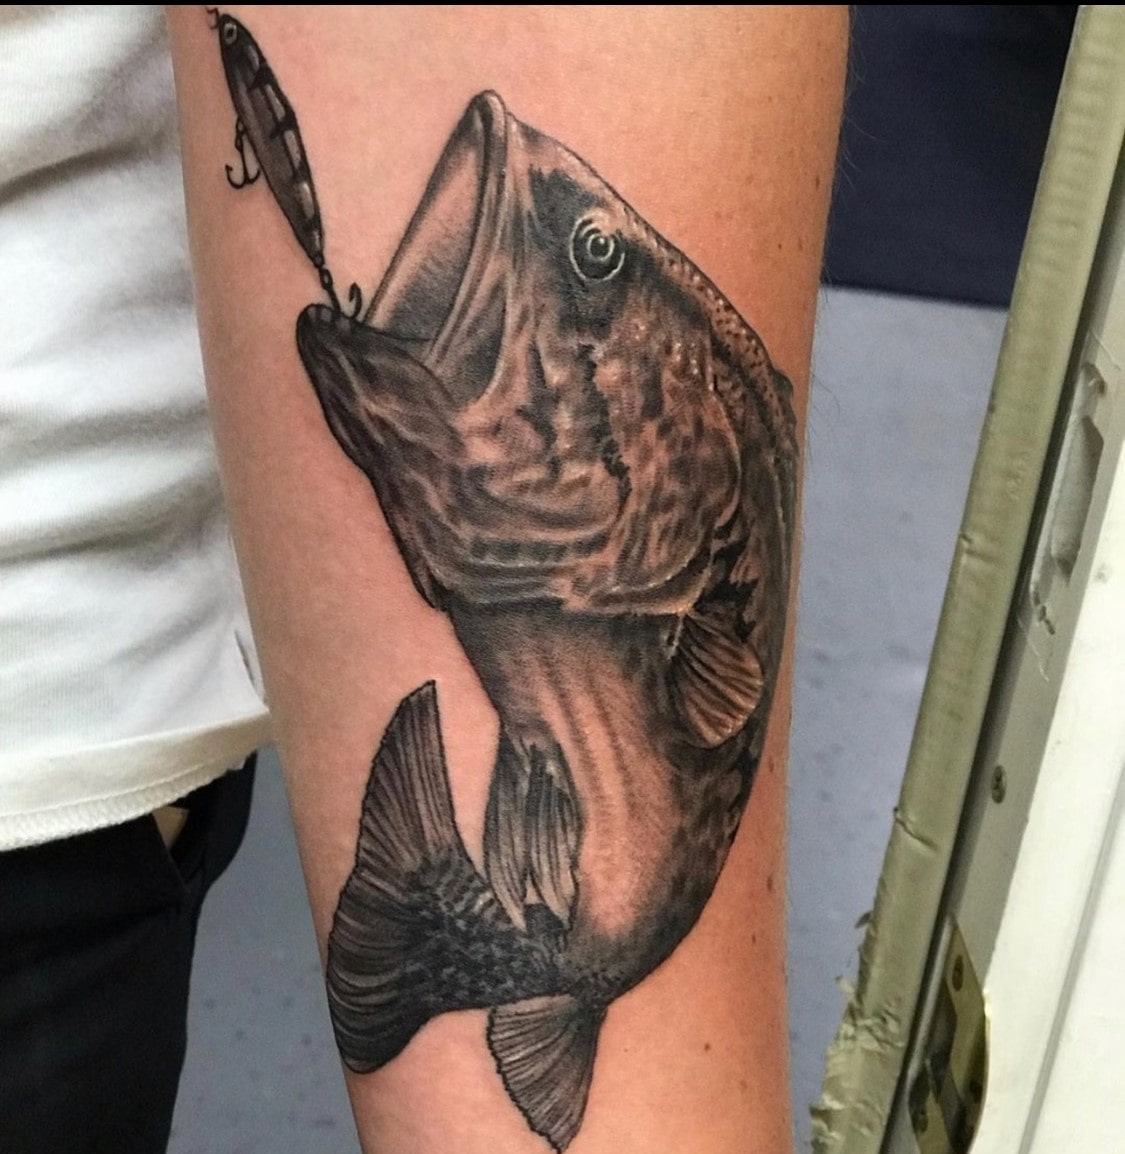 https://www.tripinktattoo.vegas/wp-content/uploads/2021/08/fish-hook-tattoo-art-las-vegas-trip-ink-tattoo-1.jpg